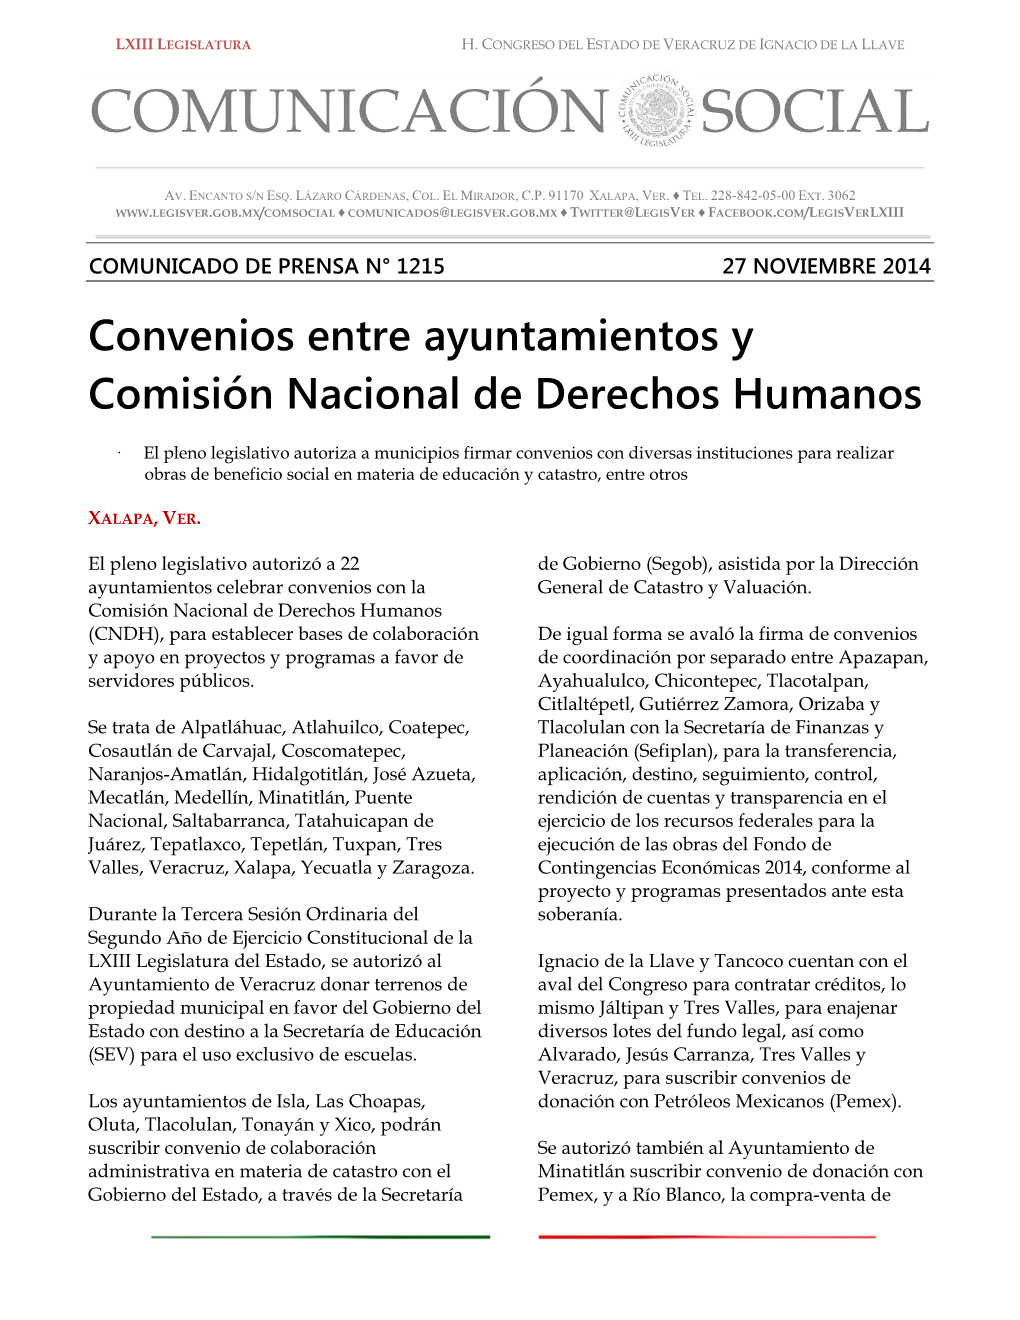 Convenios Entre Ayuntamientos Y Comisión Nacional De Derechos Humanos